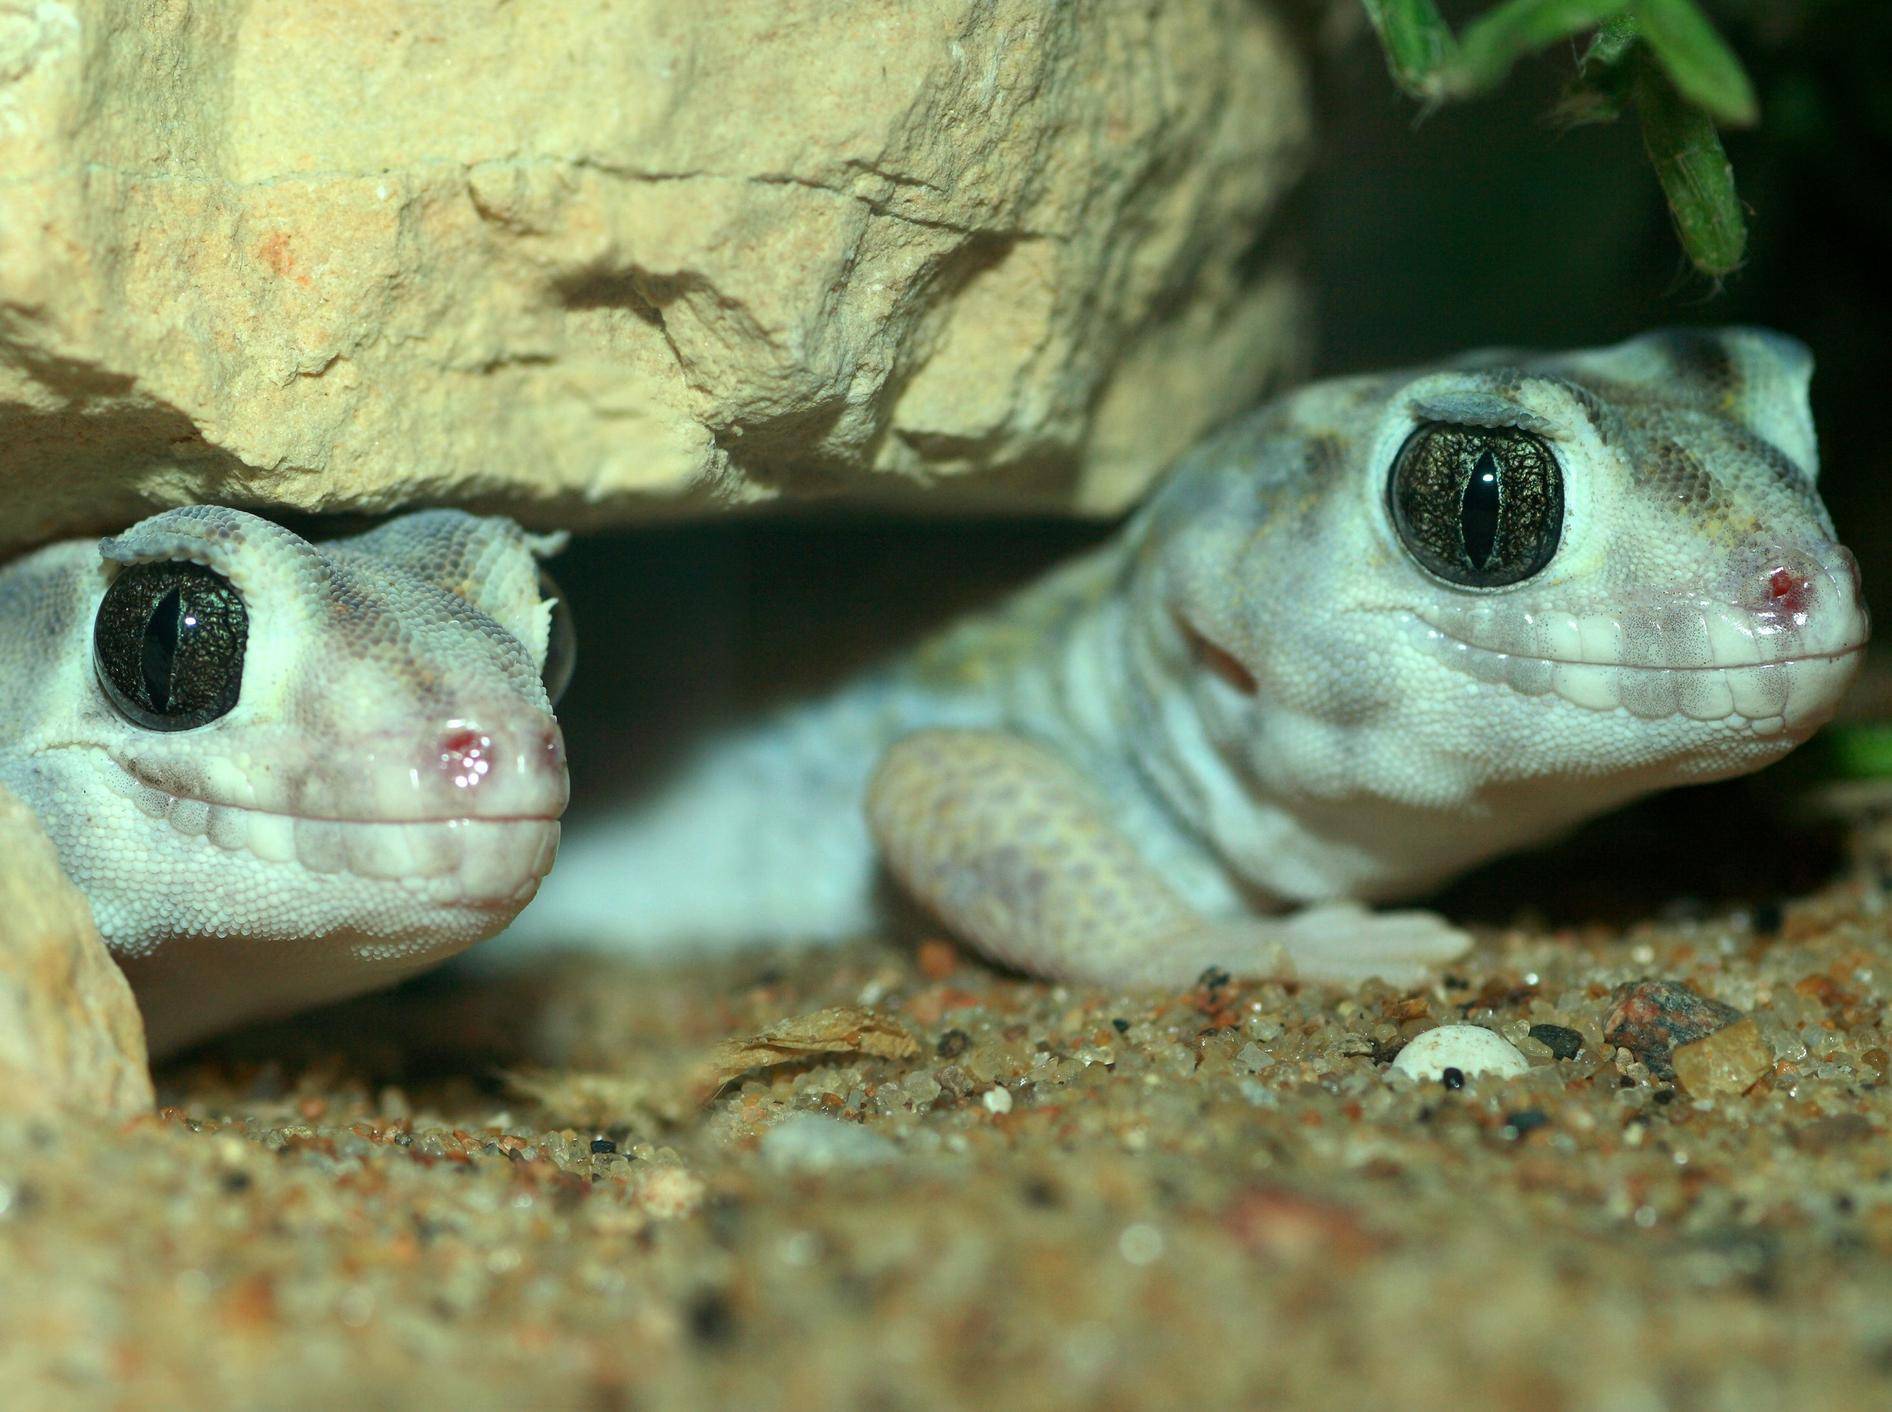 Ganz nah: Grünes Geckopärchen — Bild: Shutterstock / Dmitrijs Mihejevs